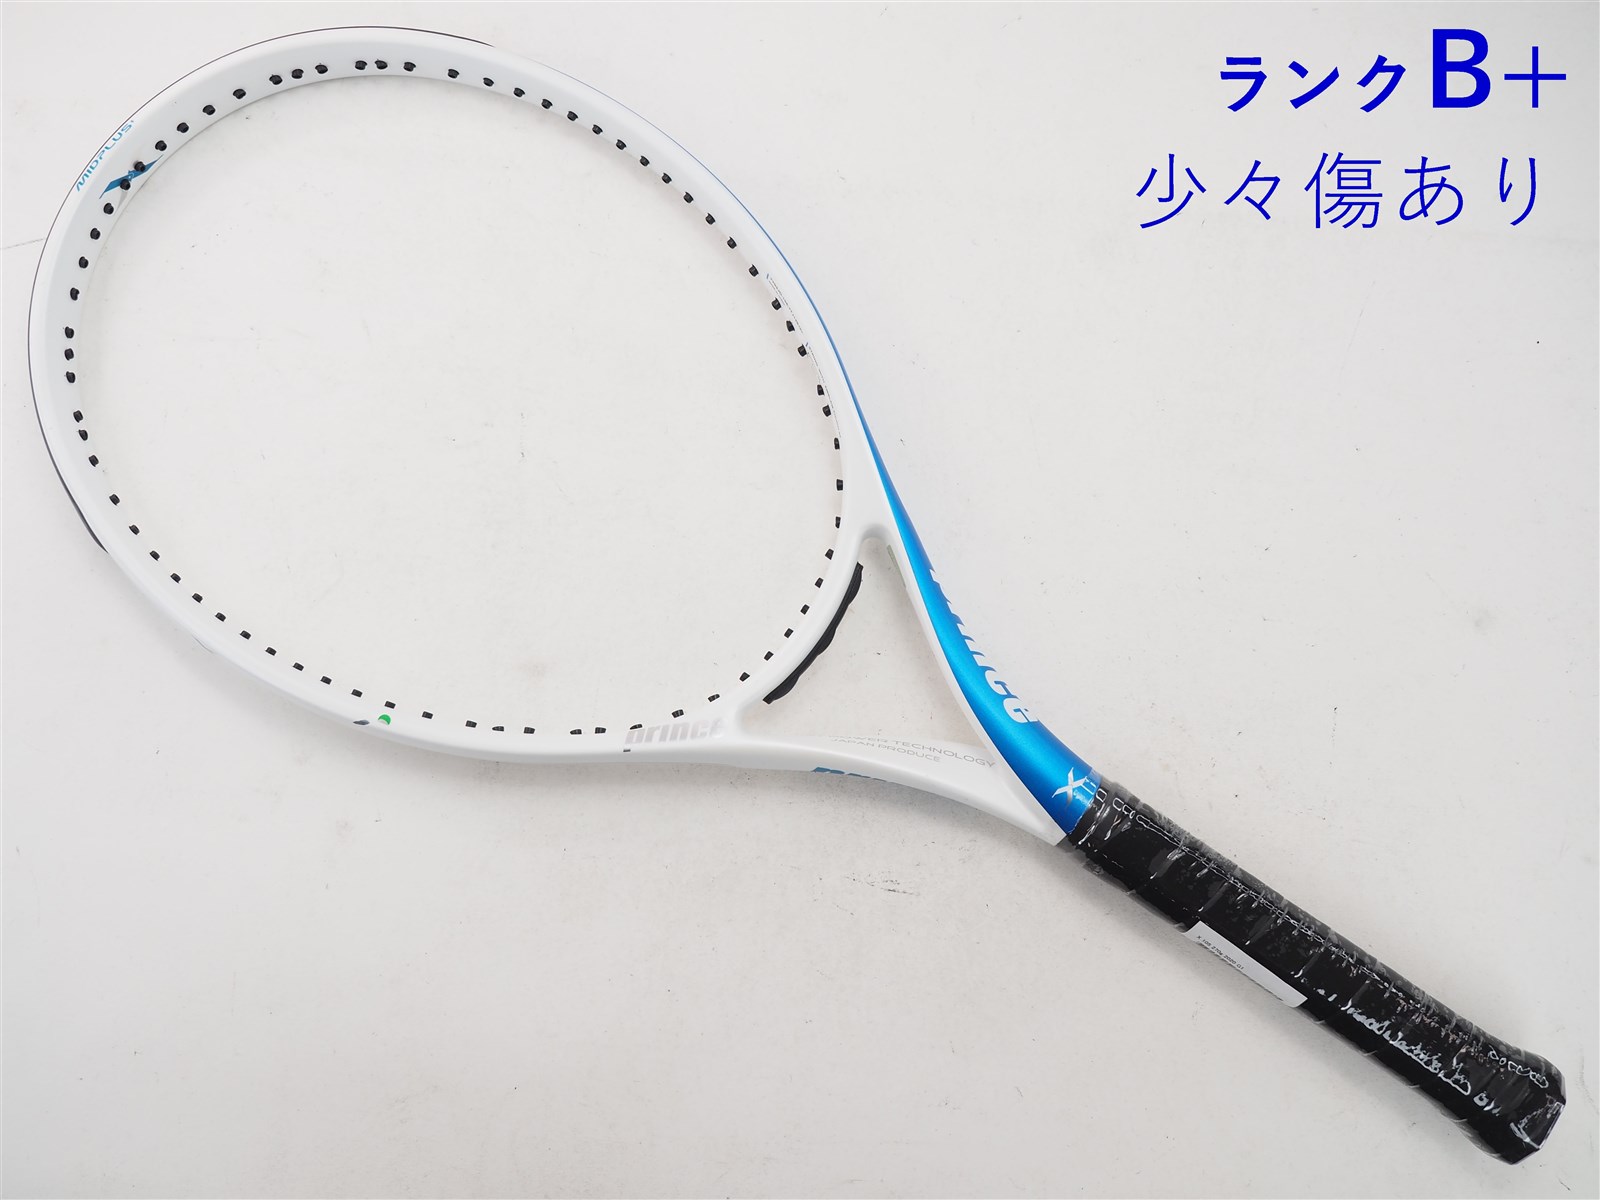 【ランクB+】 【中古】プリンス エックス 105 270g 2020年モデル PRINCE X 105 270g 2020(G1)【中古  テニスラケット】【送料無料】